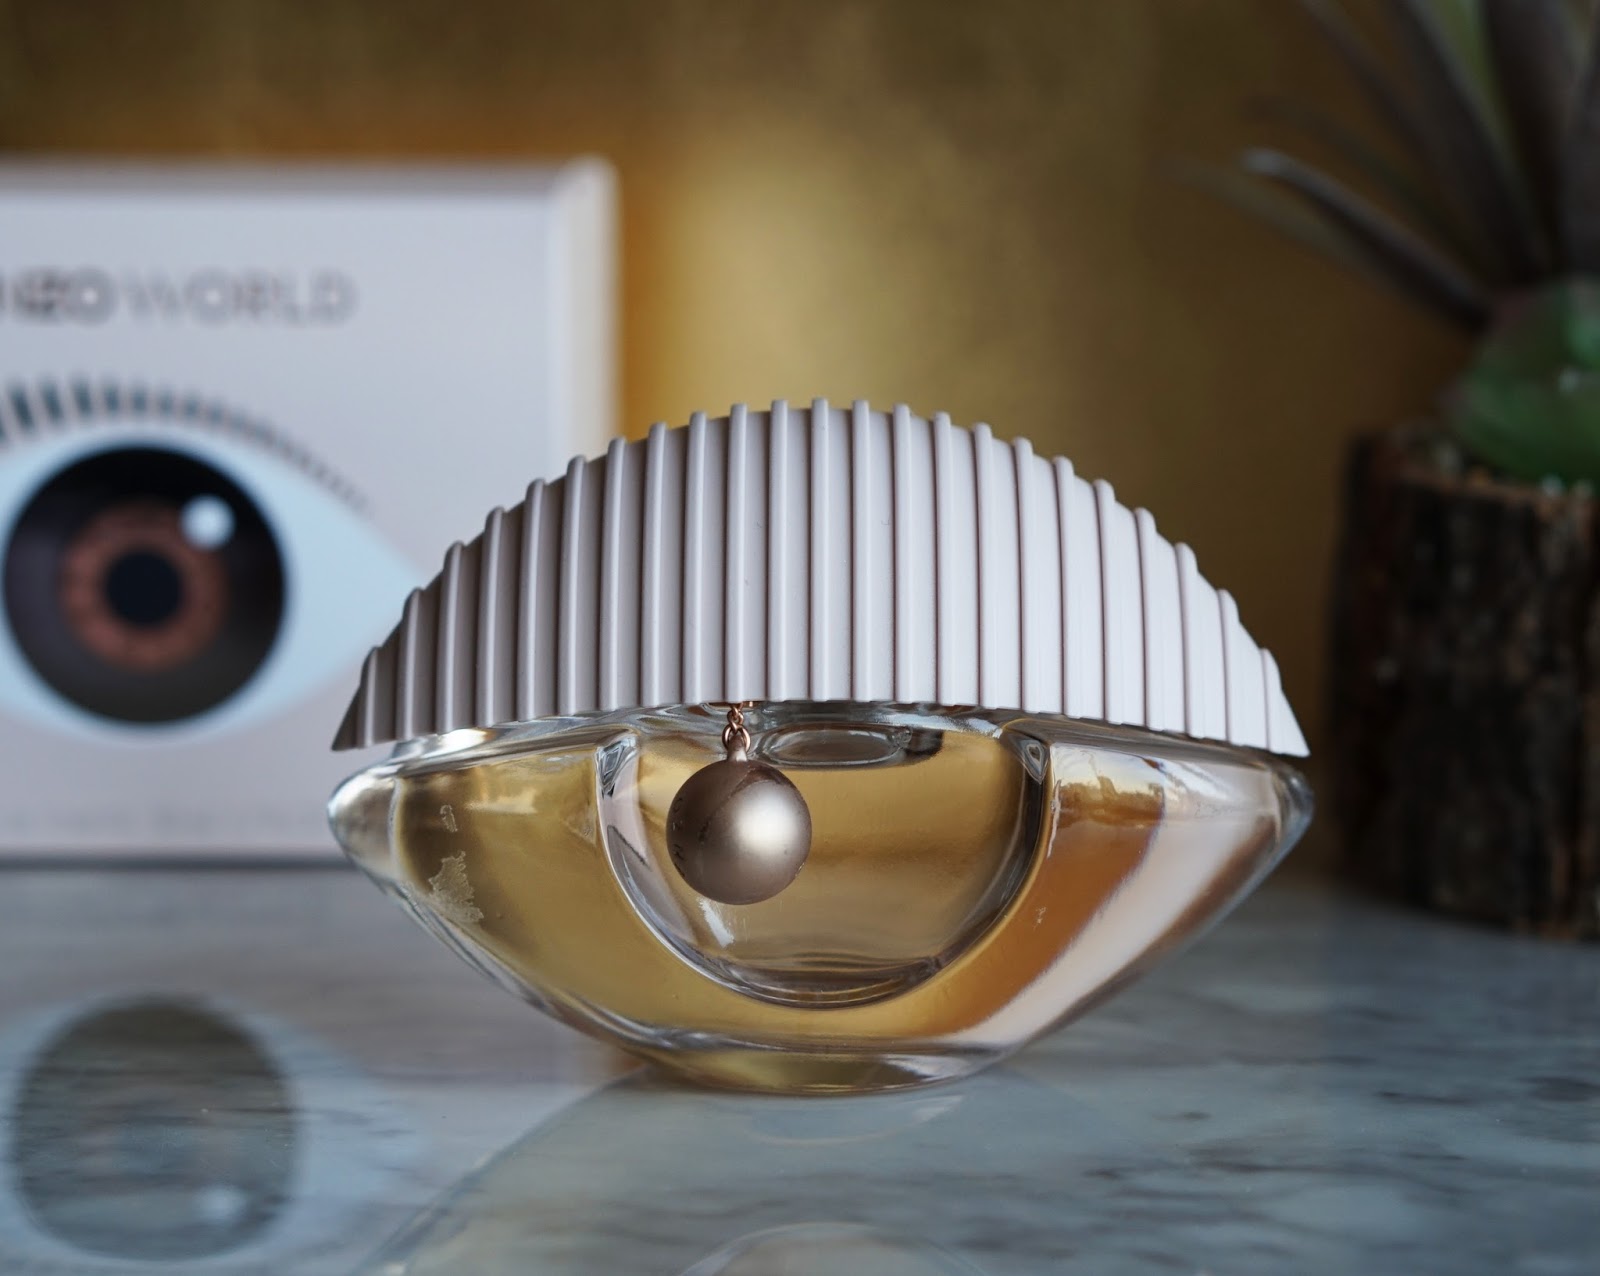 Kenzo World Eau de Toilette Spring Beauty 2018 - Raincouver New Fragrance — Review